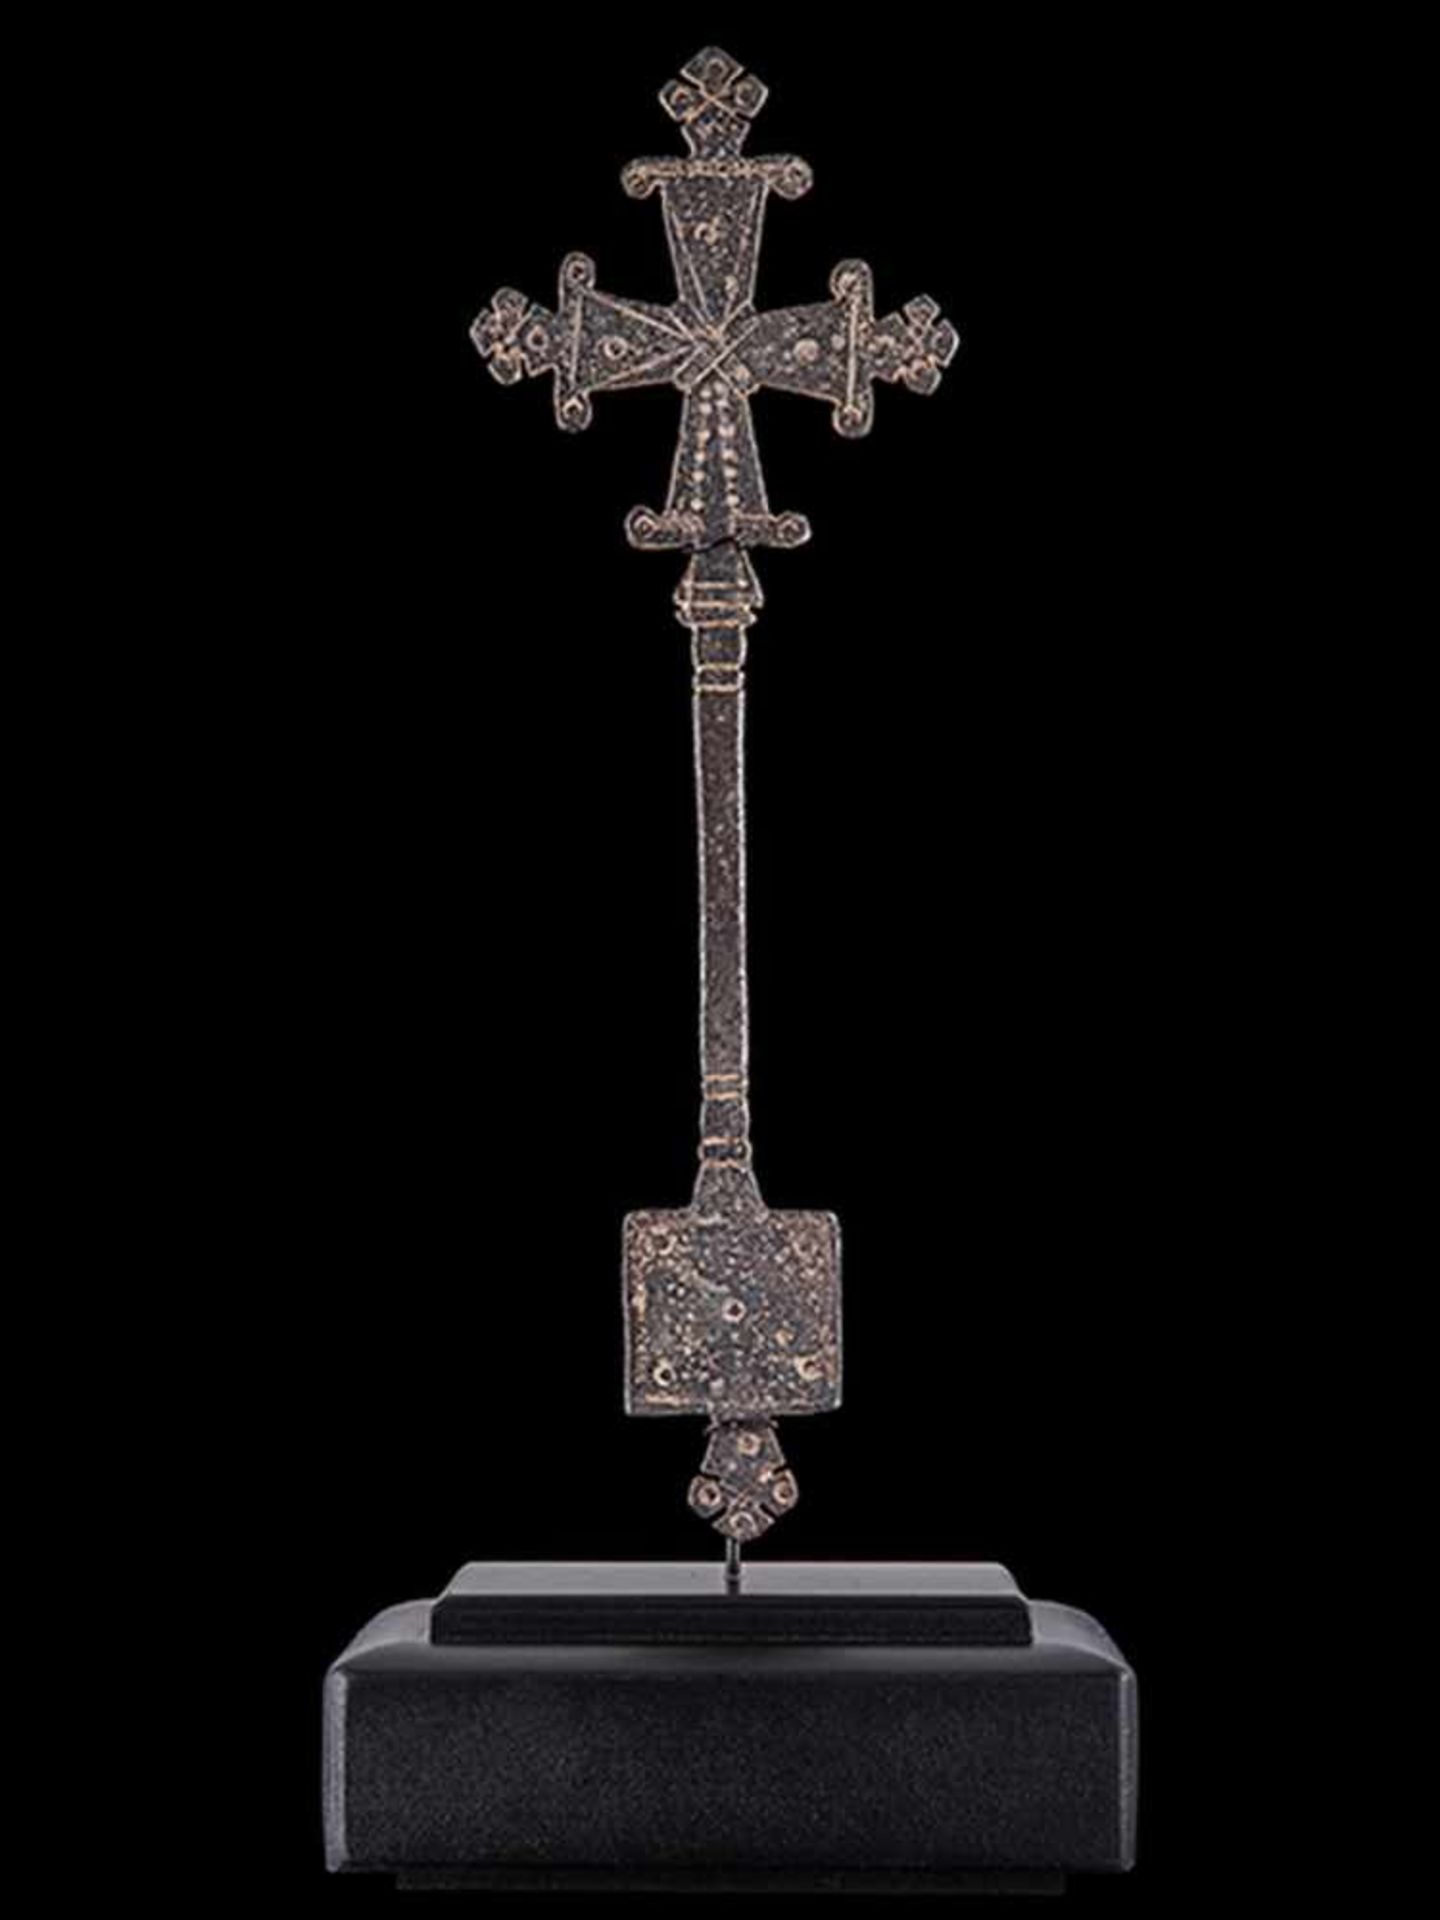 Äthiopisches Segenskreuz Höhe: 21,5 cm. Äthiopien, 19. Jahrhundert. Eisenbronze, geschmiedet, - Bild 3 aus 3